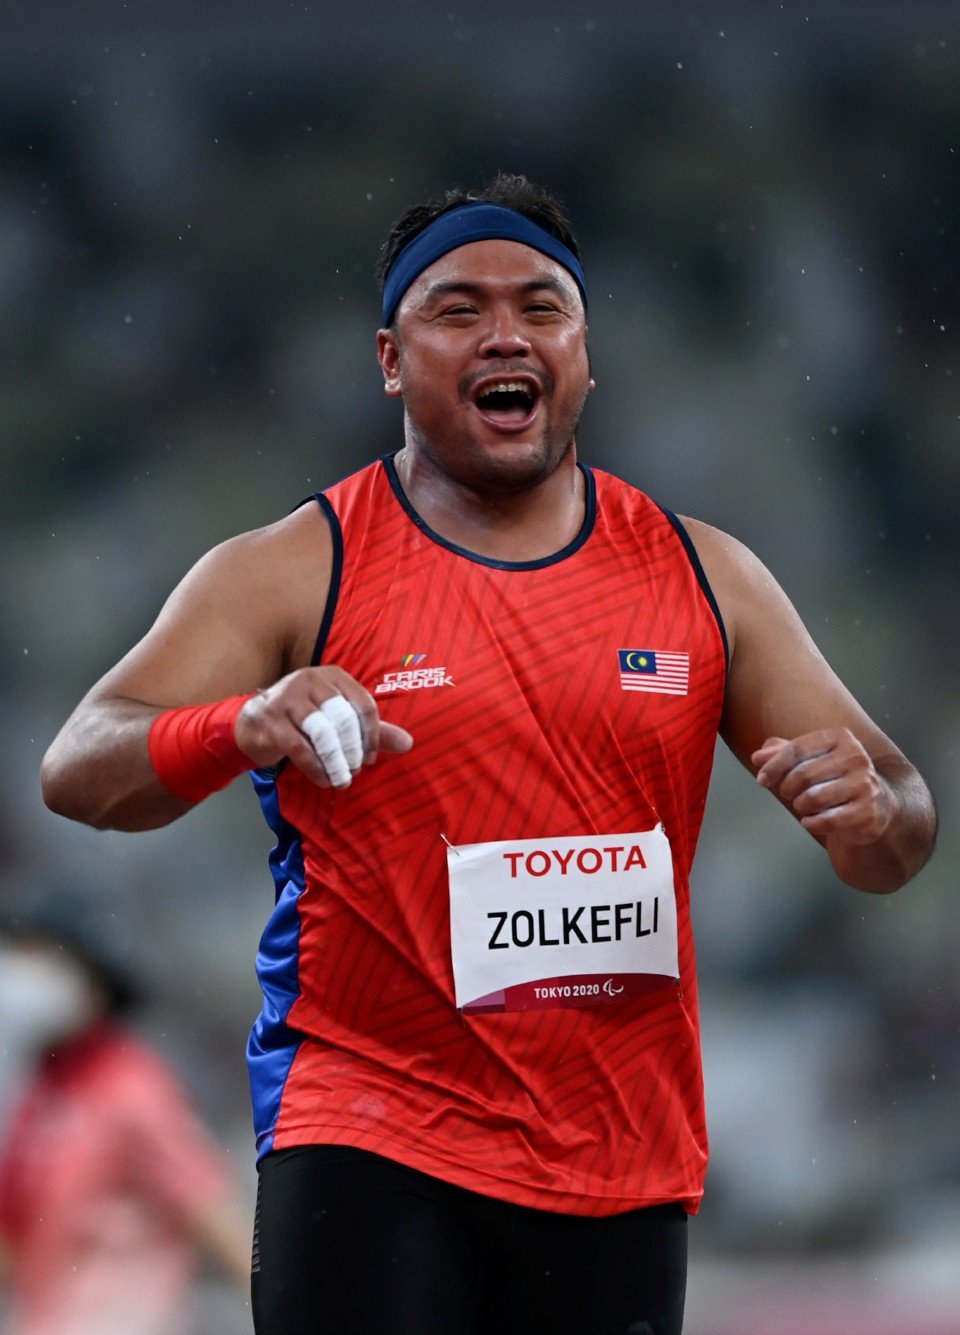 Atlet lontar peluru paralimpik negara Muhammad Ziyad Zokefli beraksi pada acara lontar peluru F20 (kategori masalah pembelajaran) pada Kejohanan Sukan Paralimpik Tokyo 2020 di Stadium Olimpik malam ini.- FOTO BERNAMA